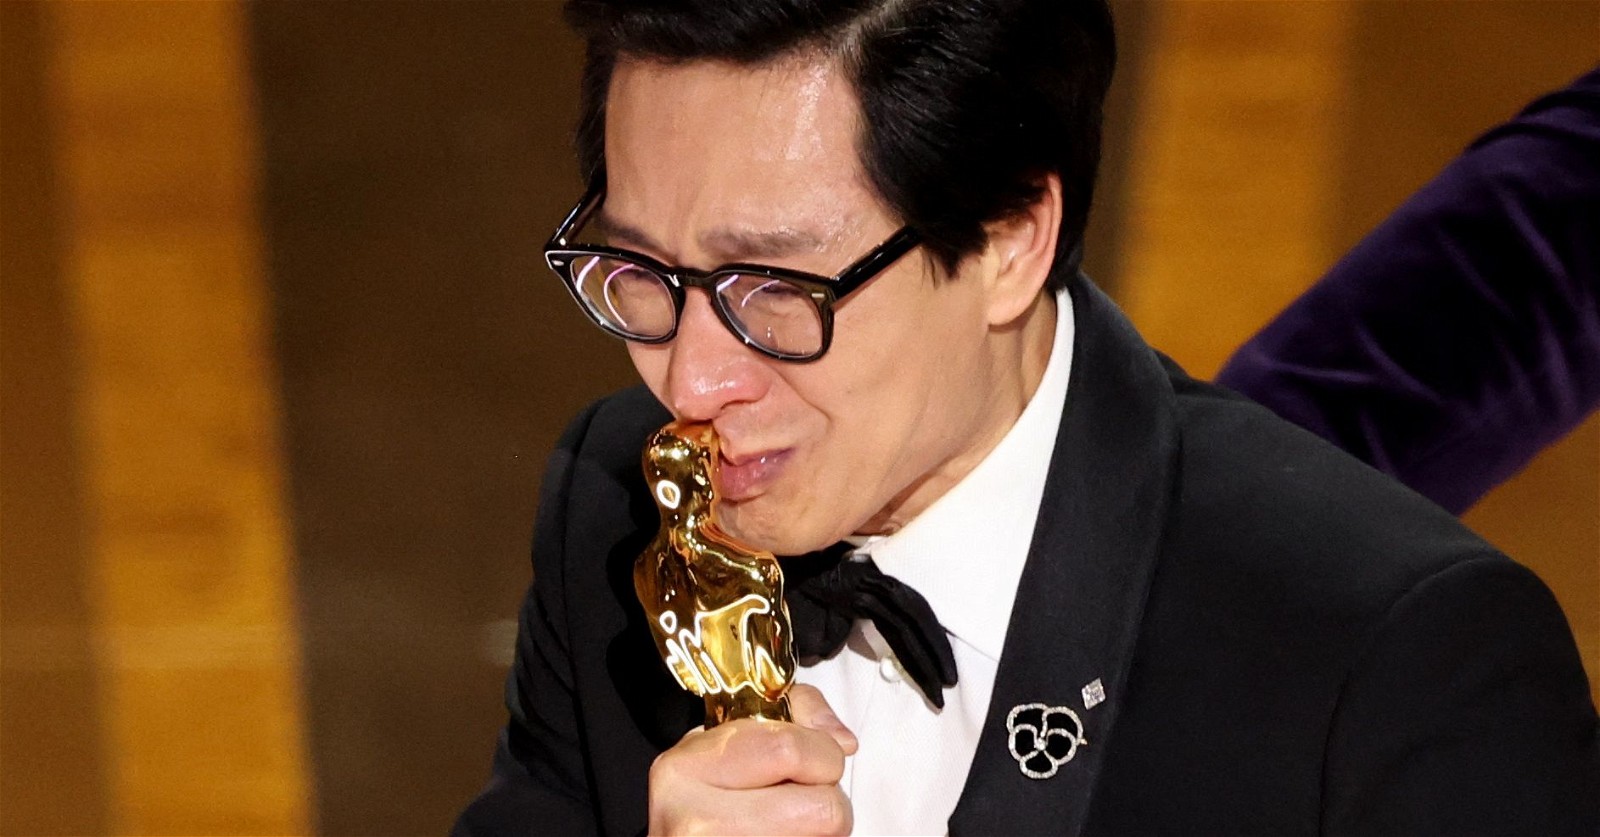 Ke Huy Quan at the 95th Academy Awards